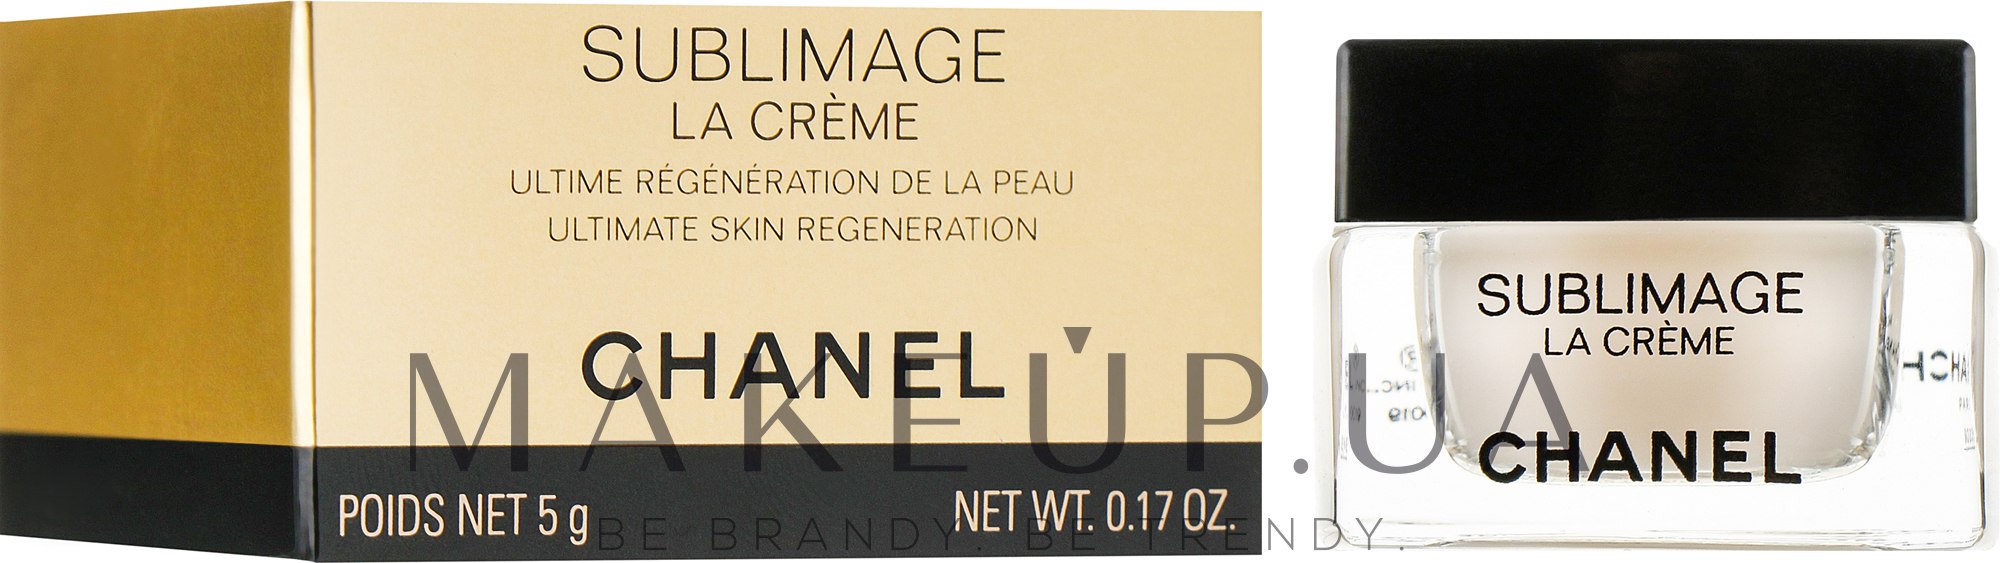 Chanel Sublimage La Creme (мини) - Регенерирующий крем для лица: купить по  лучшей цене в Украине